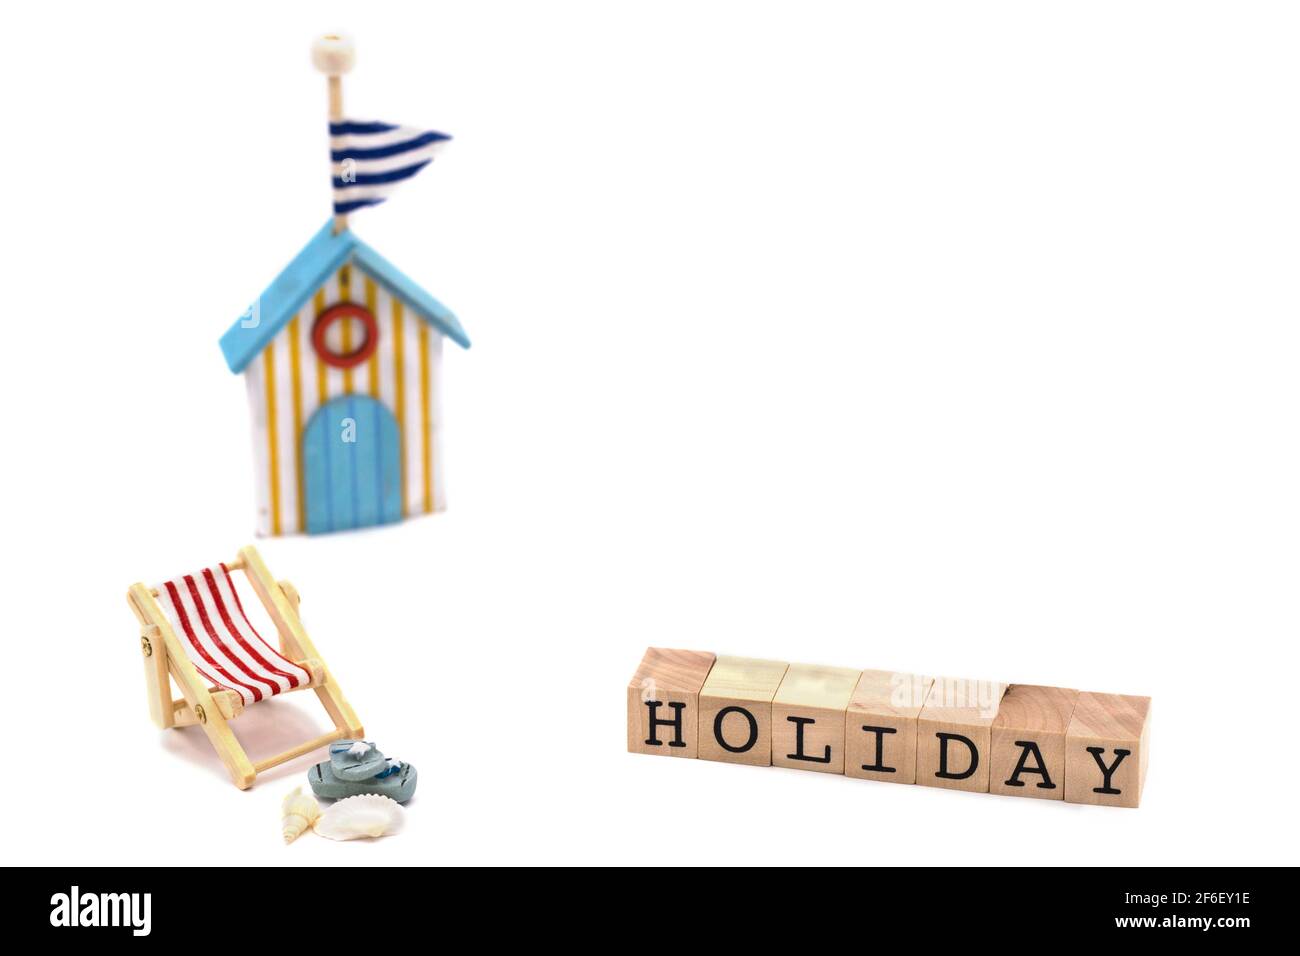 Silla de playa con sandalias, conchas, casa de baño, bloques de madera con texto de vacaciones Foto de stock